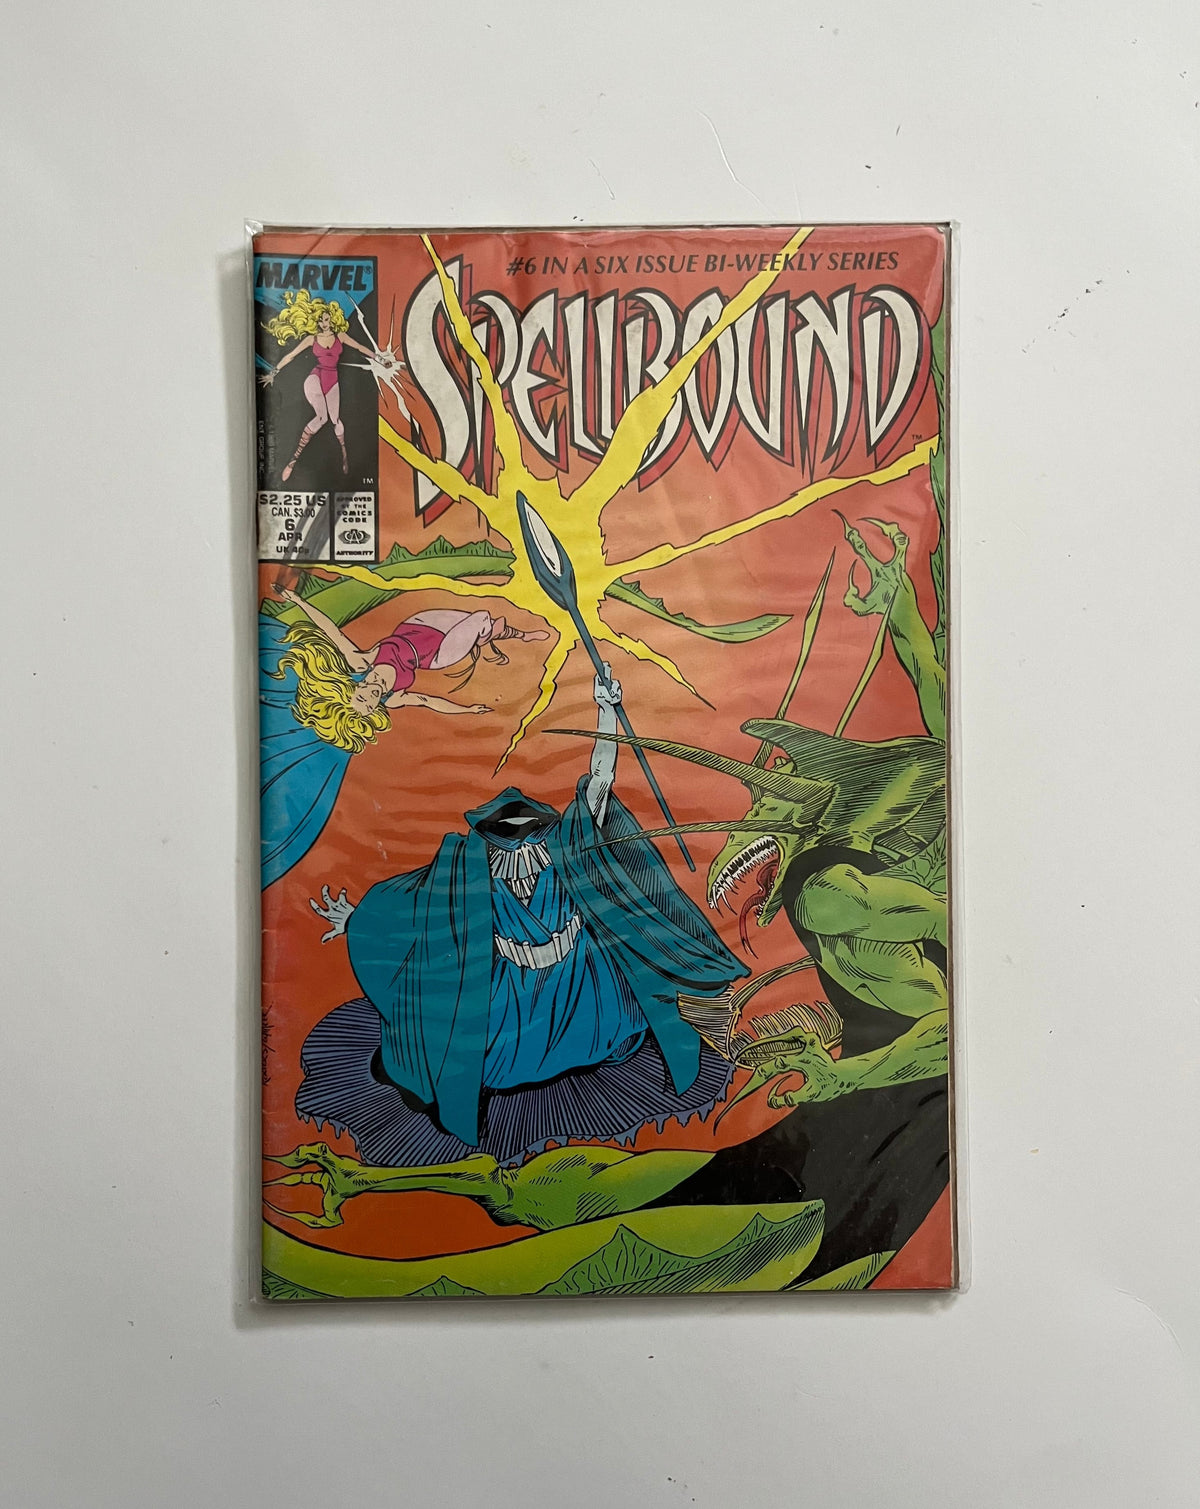 Spellbound comic book